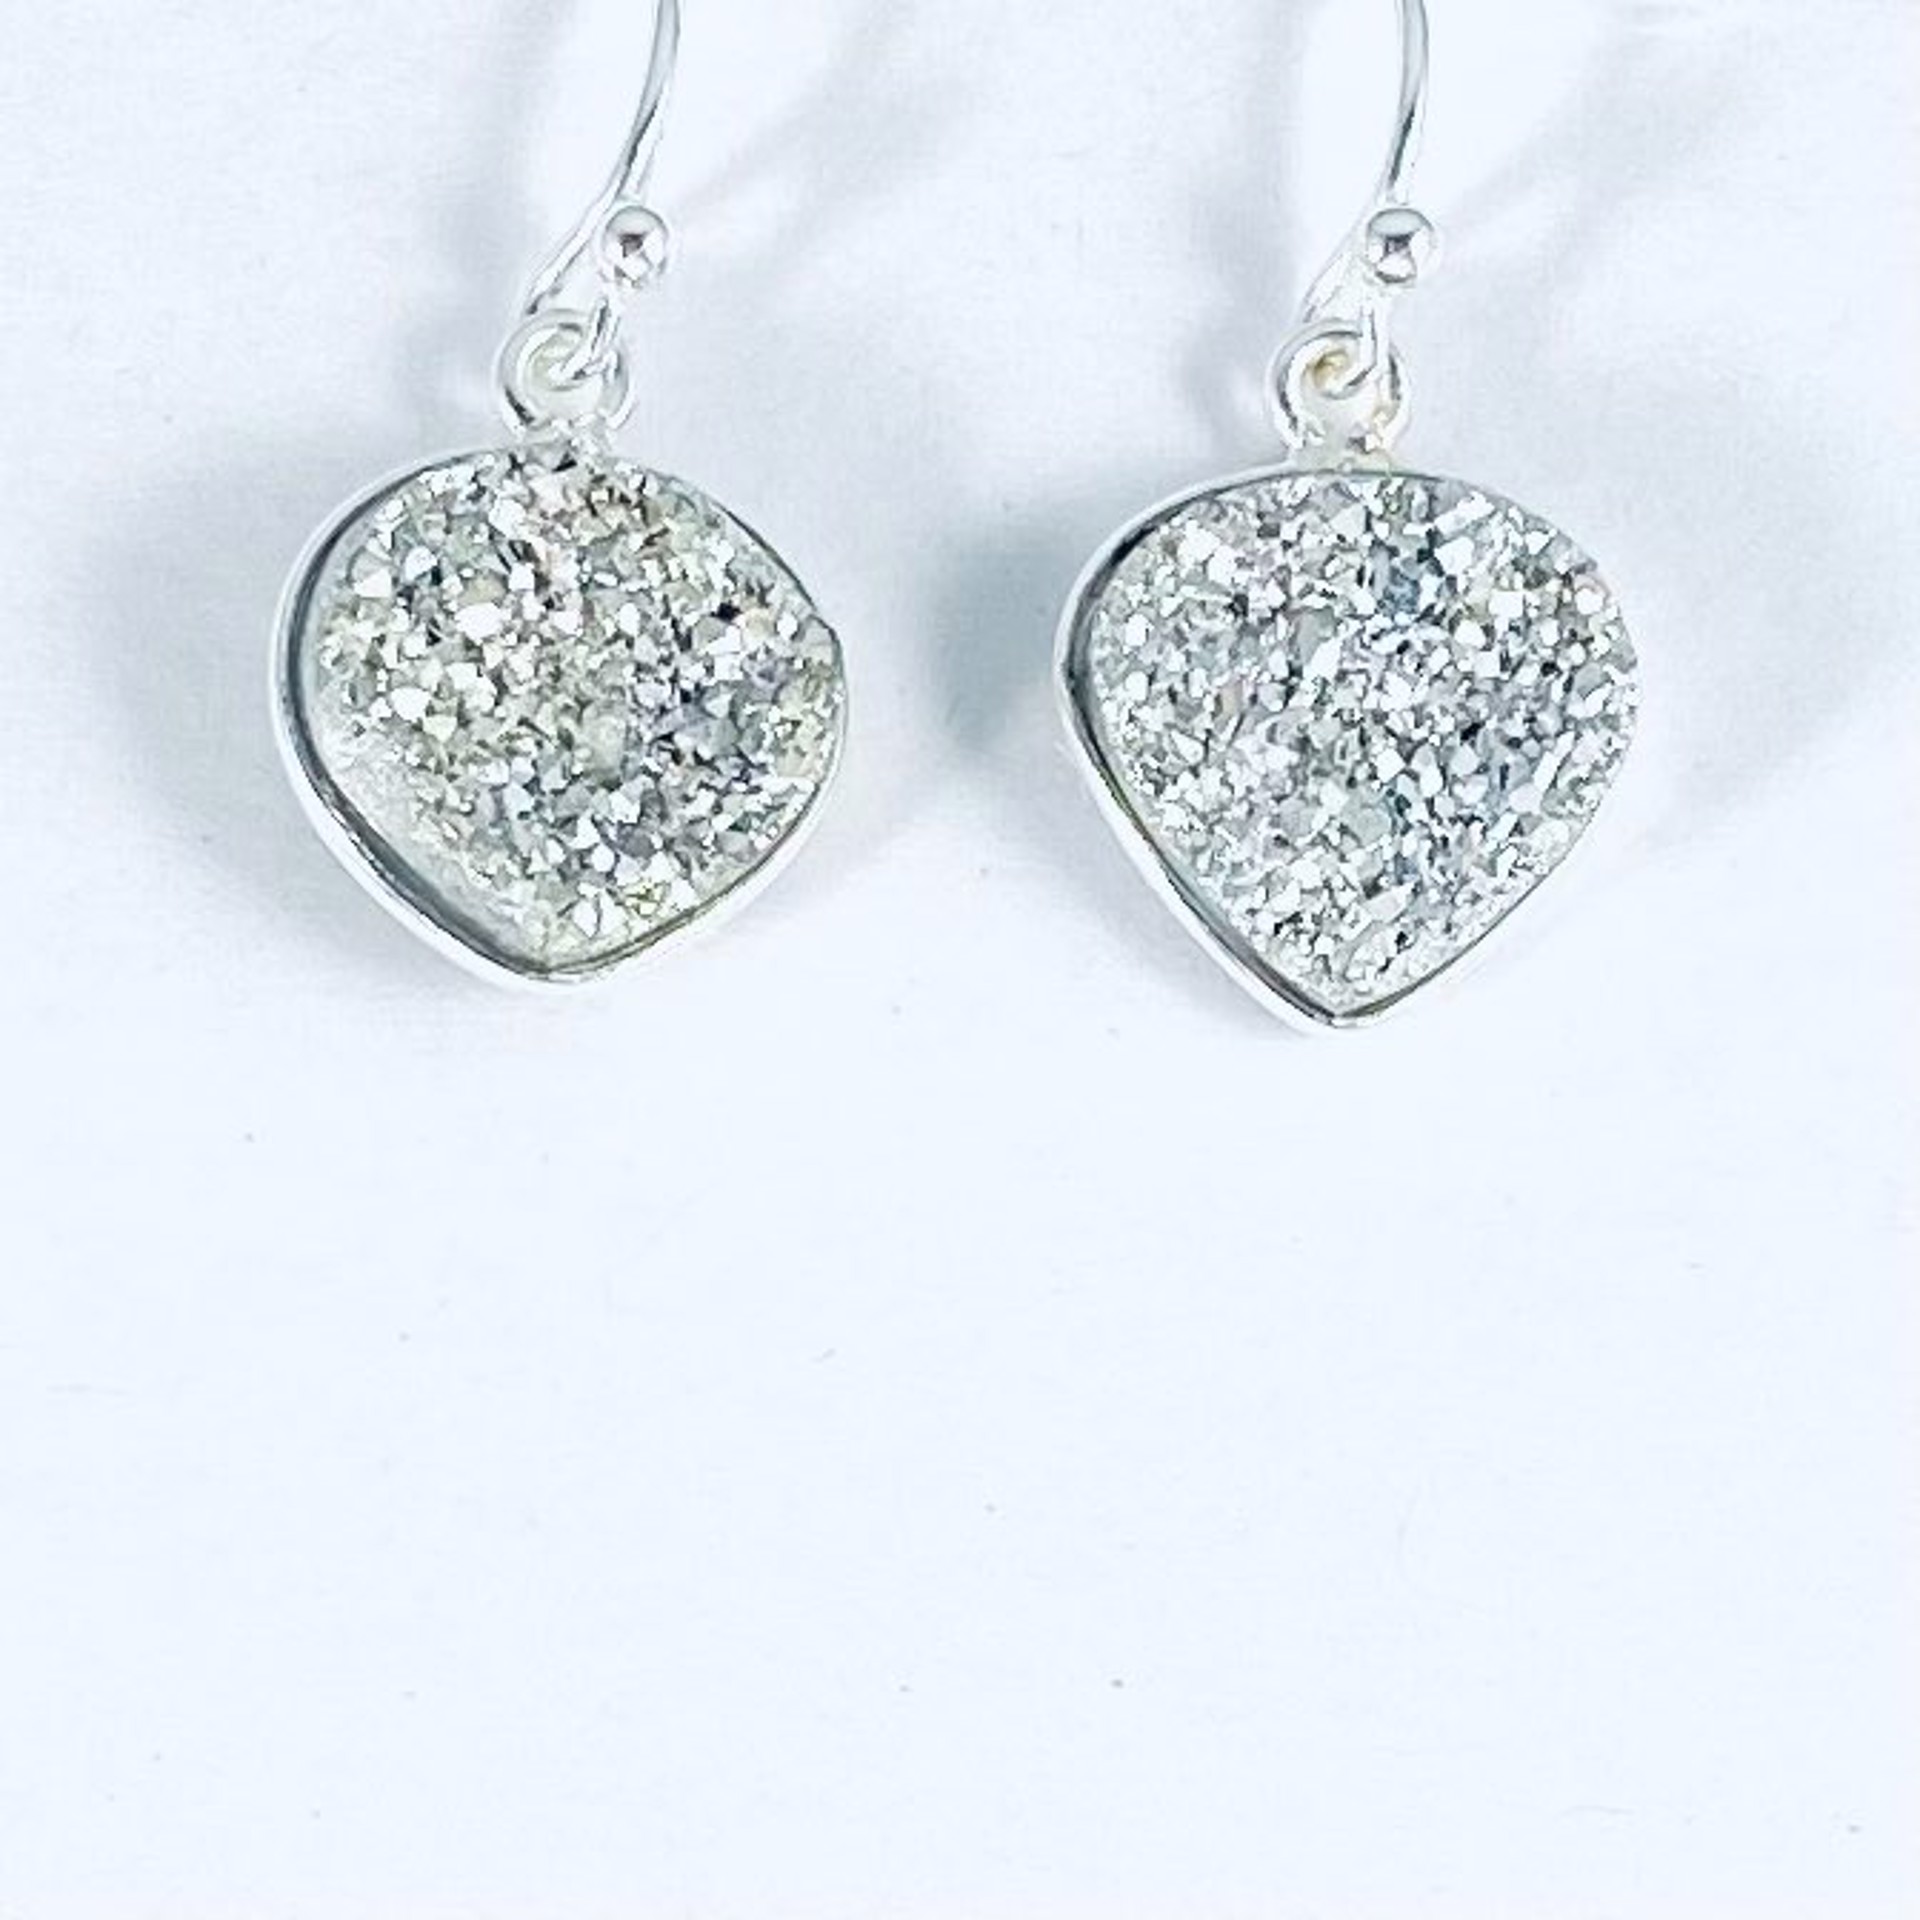 Heart Shaped Silver Druzy Earrings NT22-224 by Nance Trueworthy